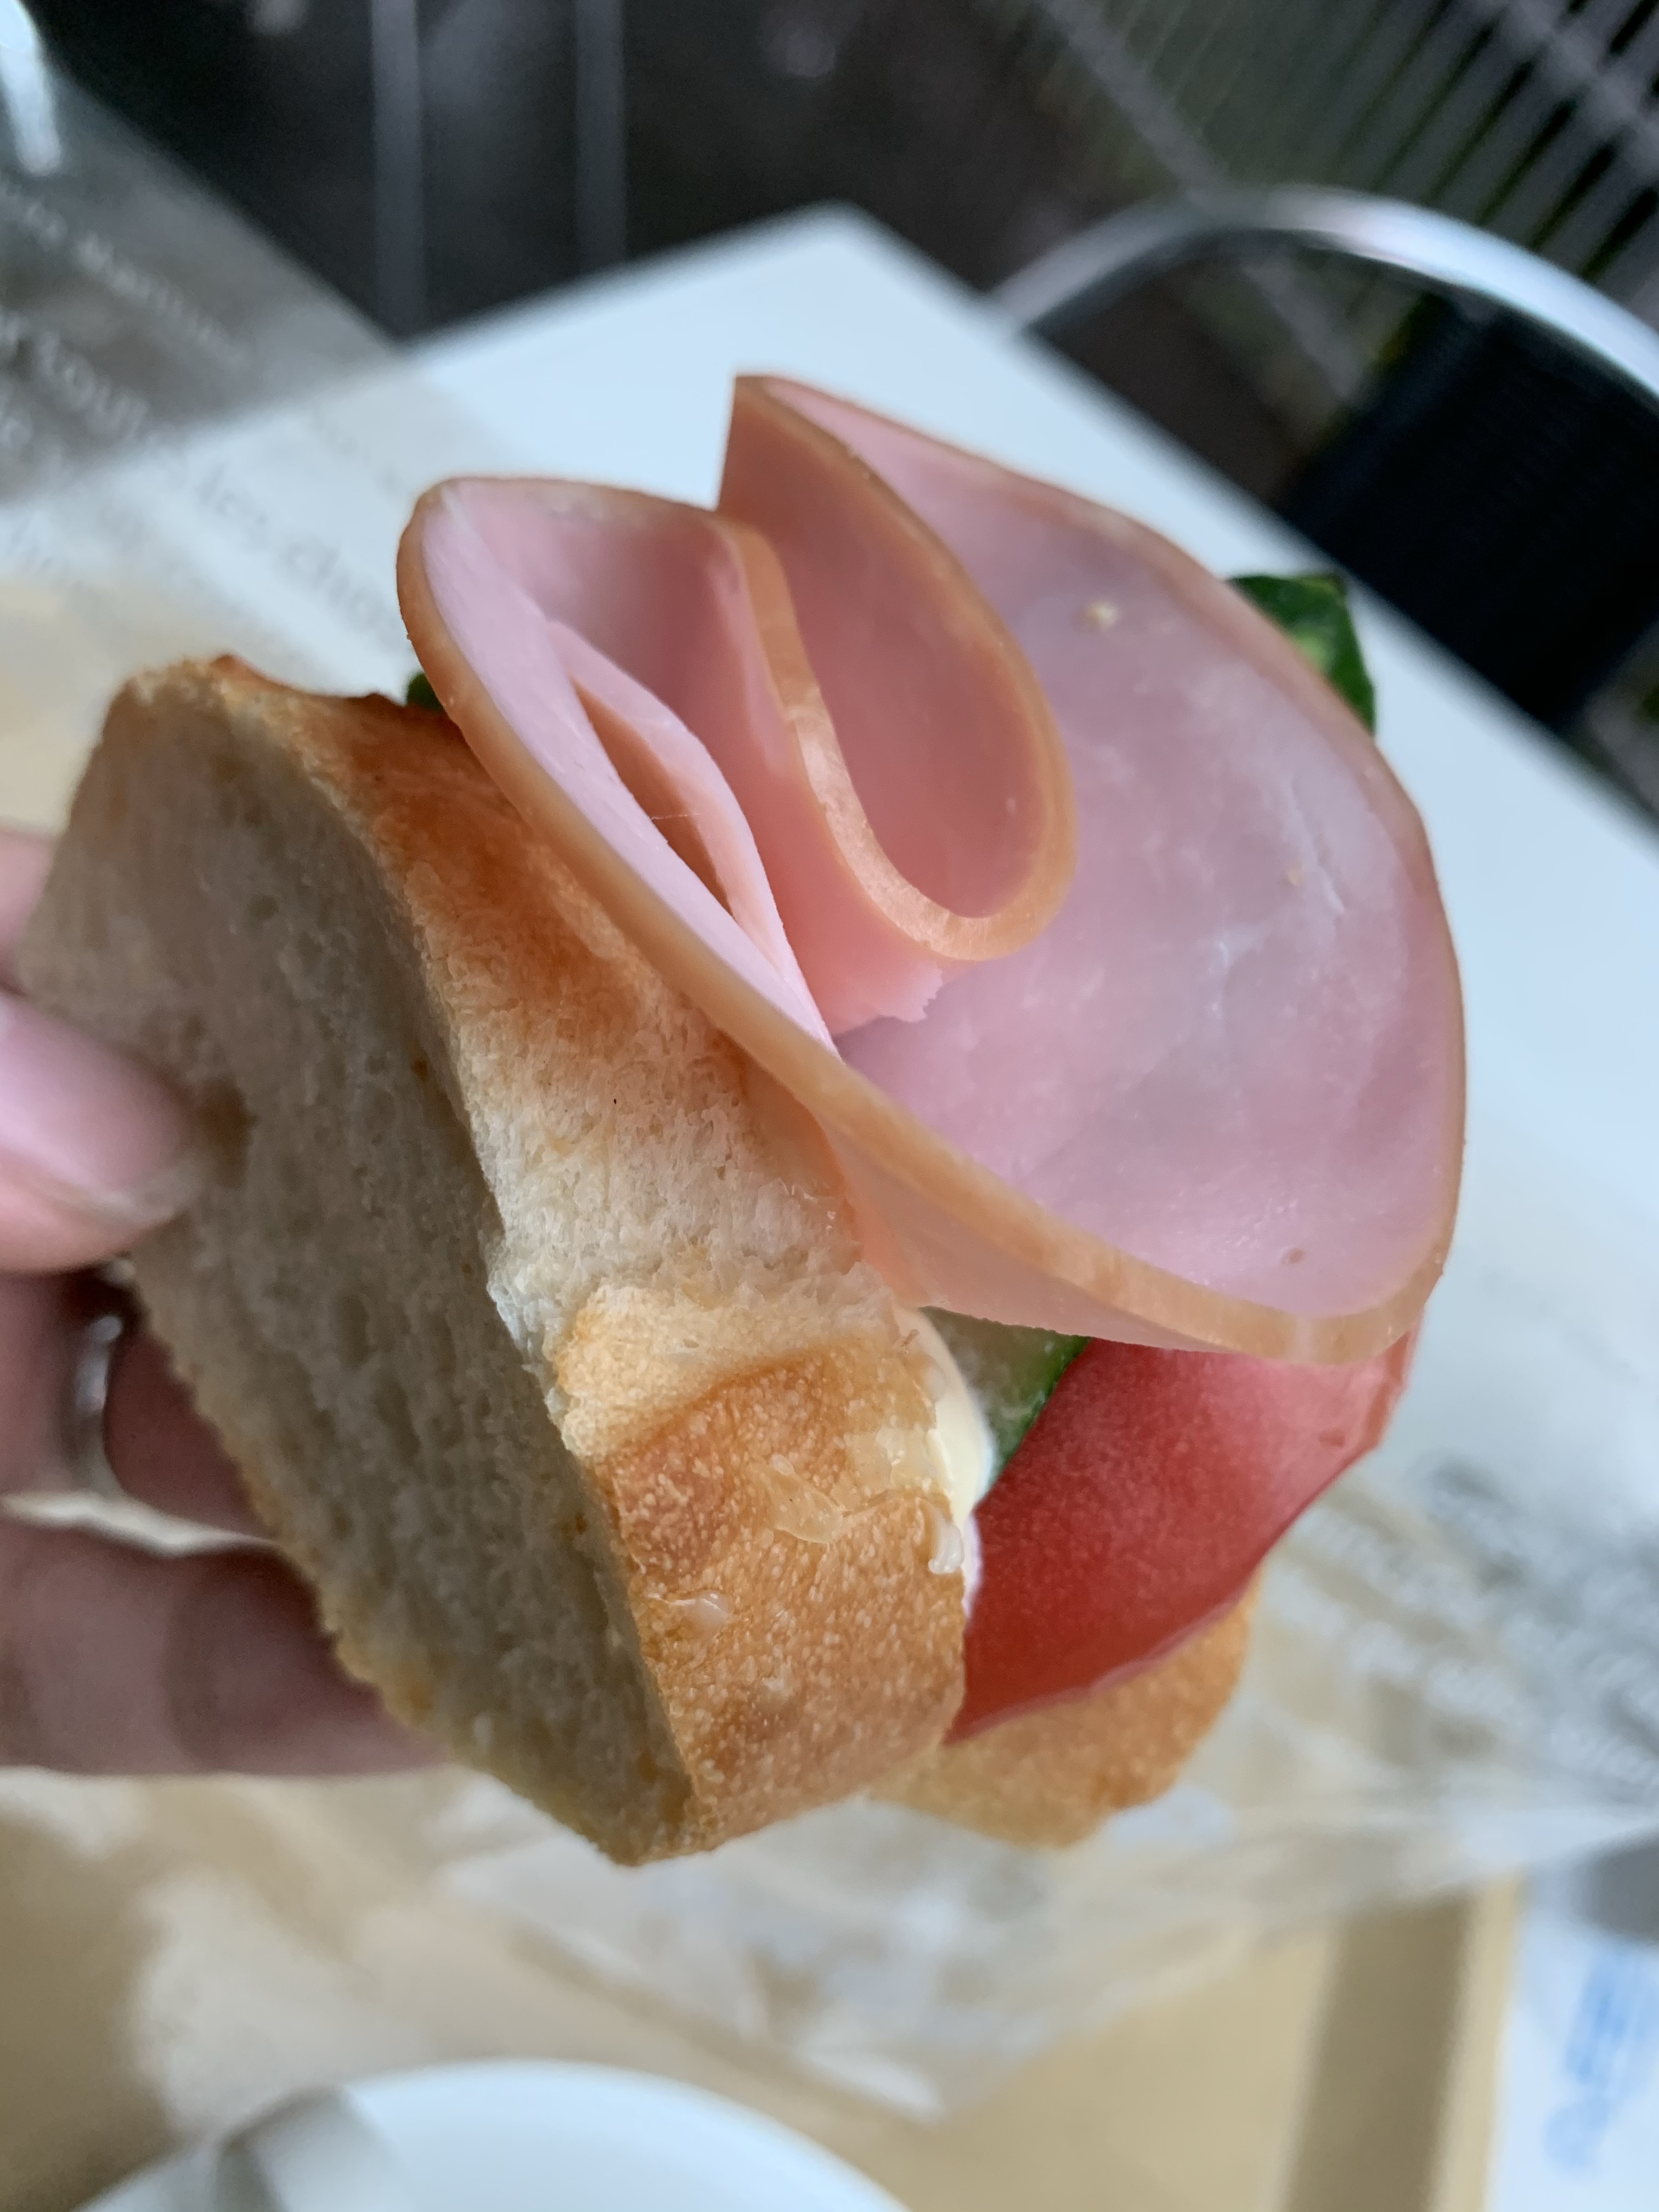 日本のフランスパンの歴史を作った 関口フランスパンでランチ 東京 文京区関口 18年創業 明治21年 老舗食堂 100年以上の歴史 を持つ店舗を巡る旅